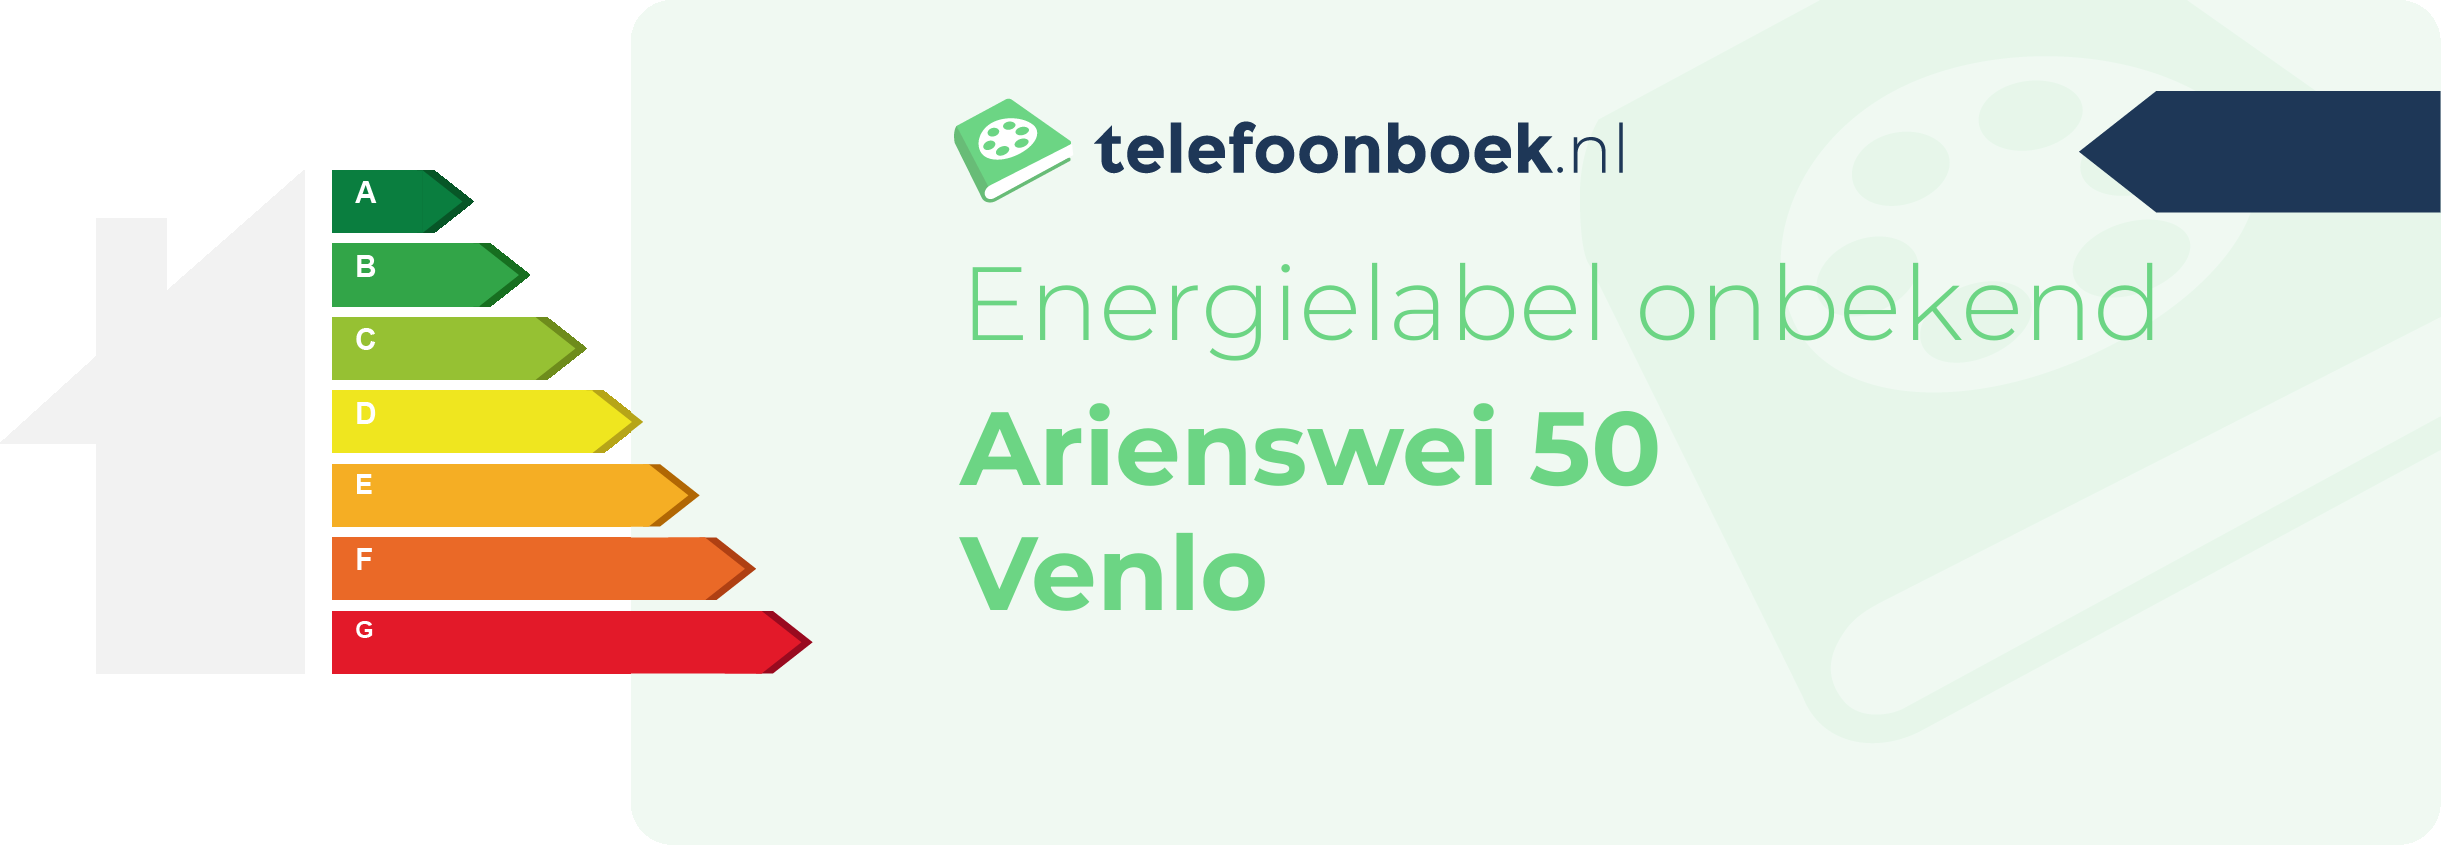 Energielabel Arienswei 50 Venlo